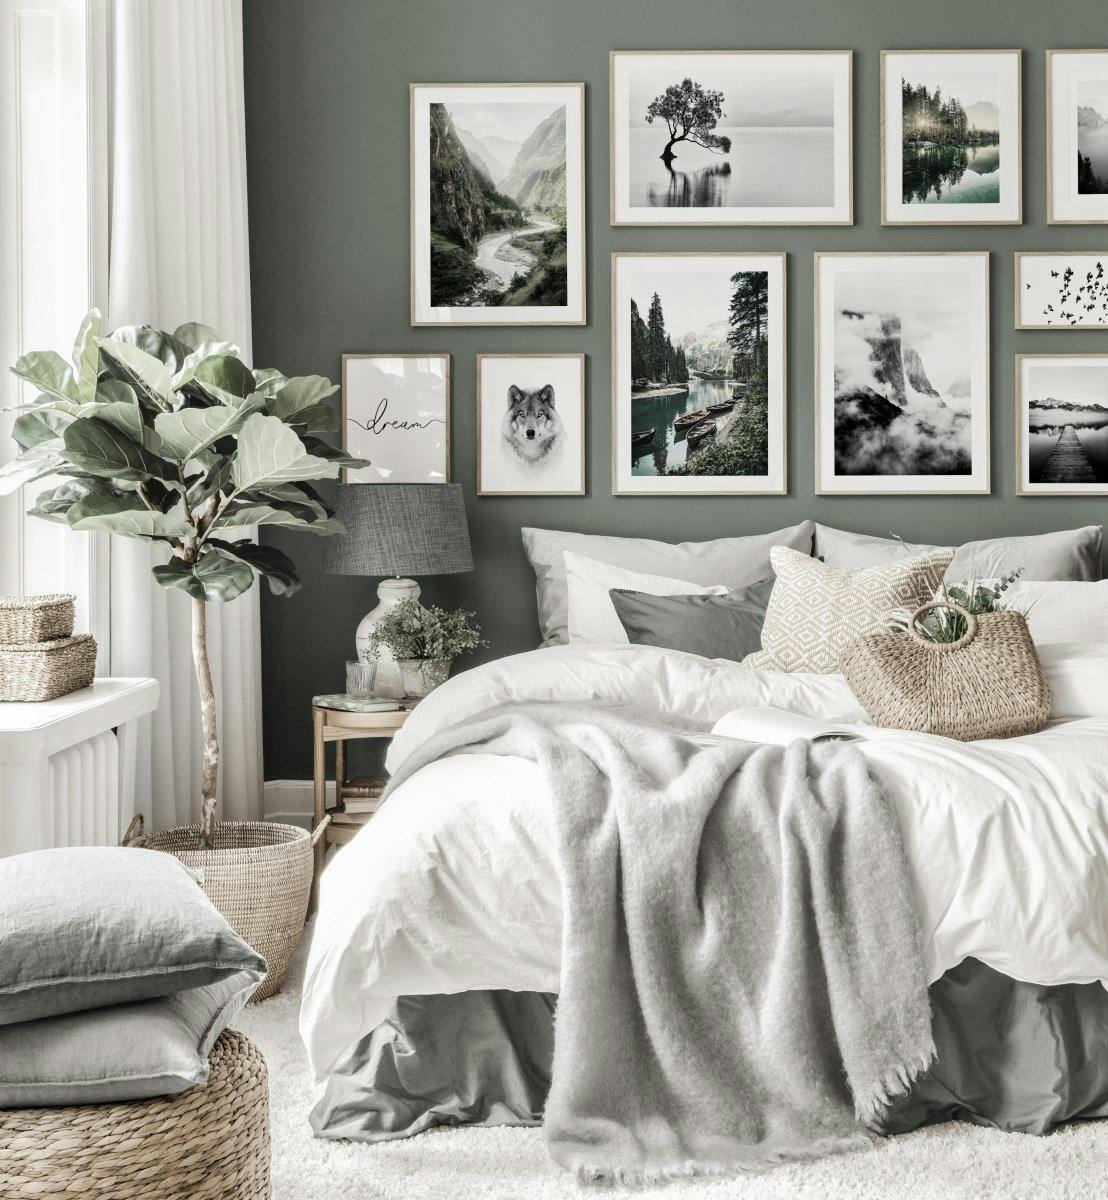 Inspirowana natura galeria obrazow zielona sypialnia czarno-biale plakaty debowe ramki